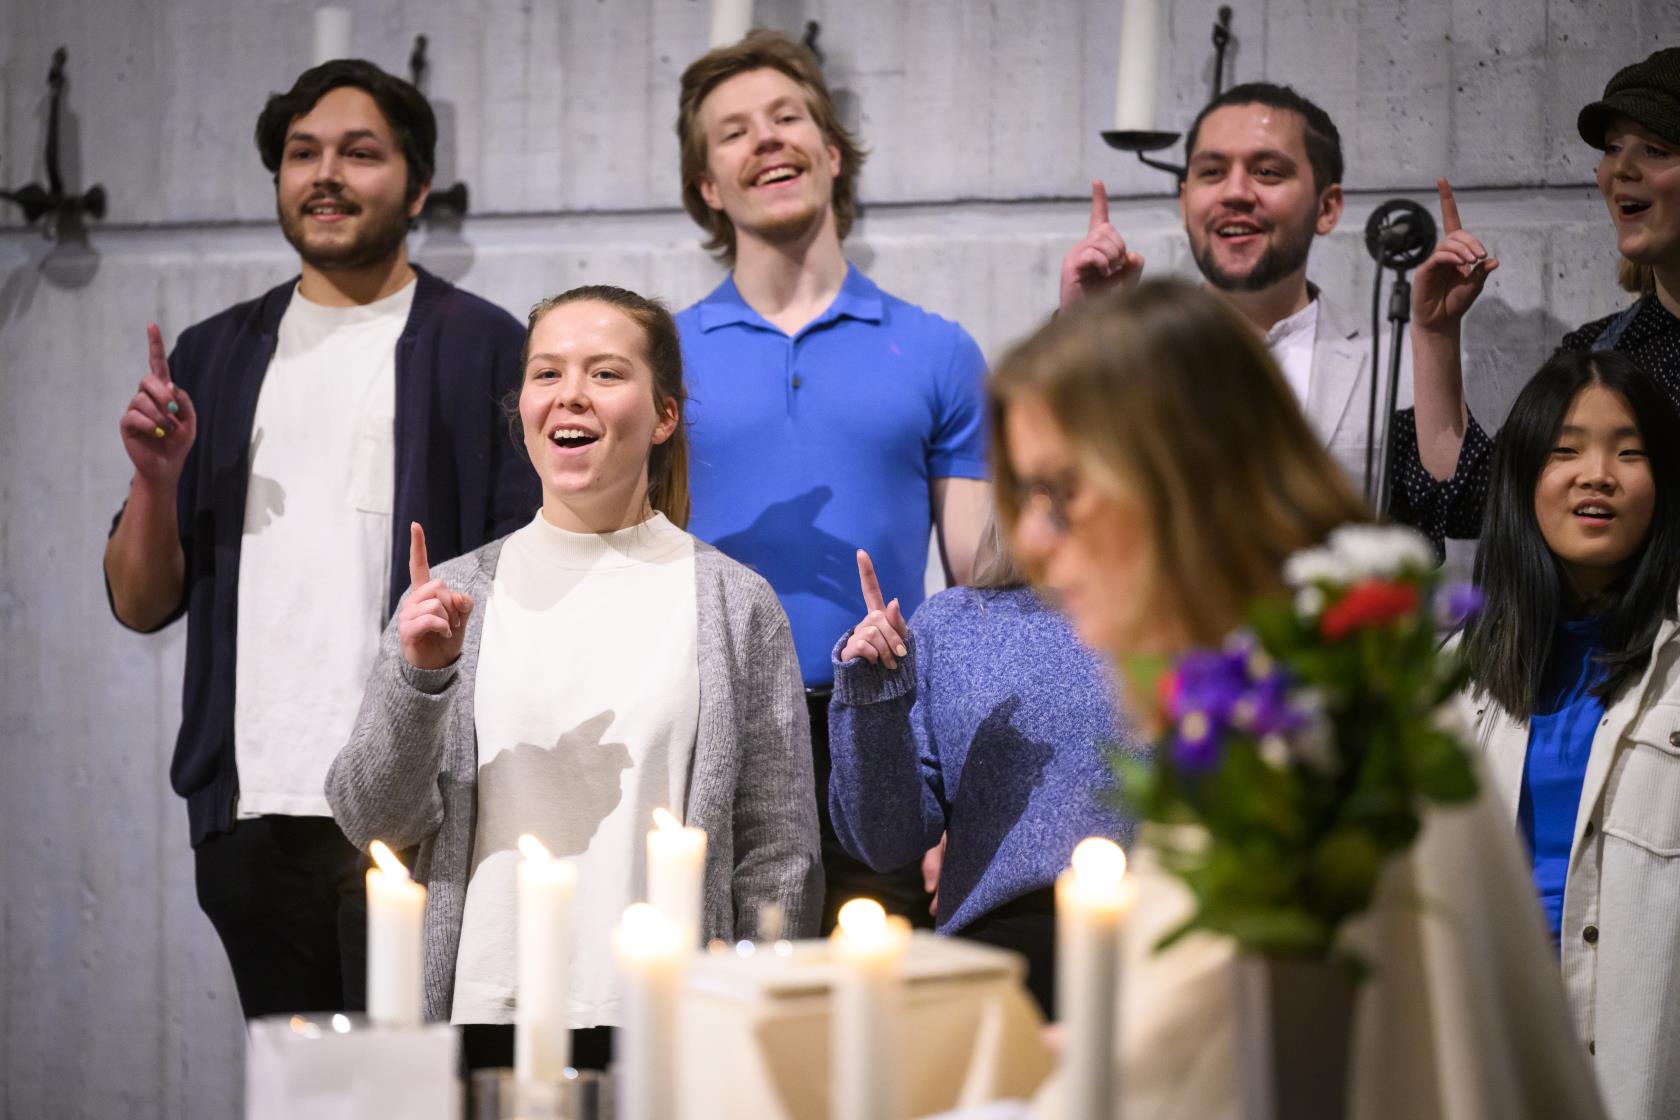 En blandad ungdomskör sjunger i en kyrka. De håller upp sina pekfingrar.